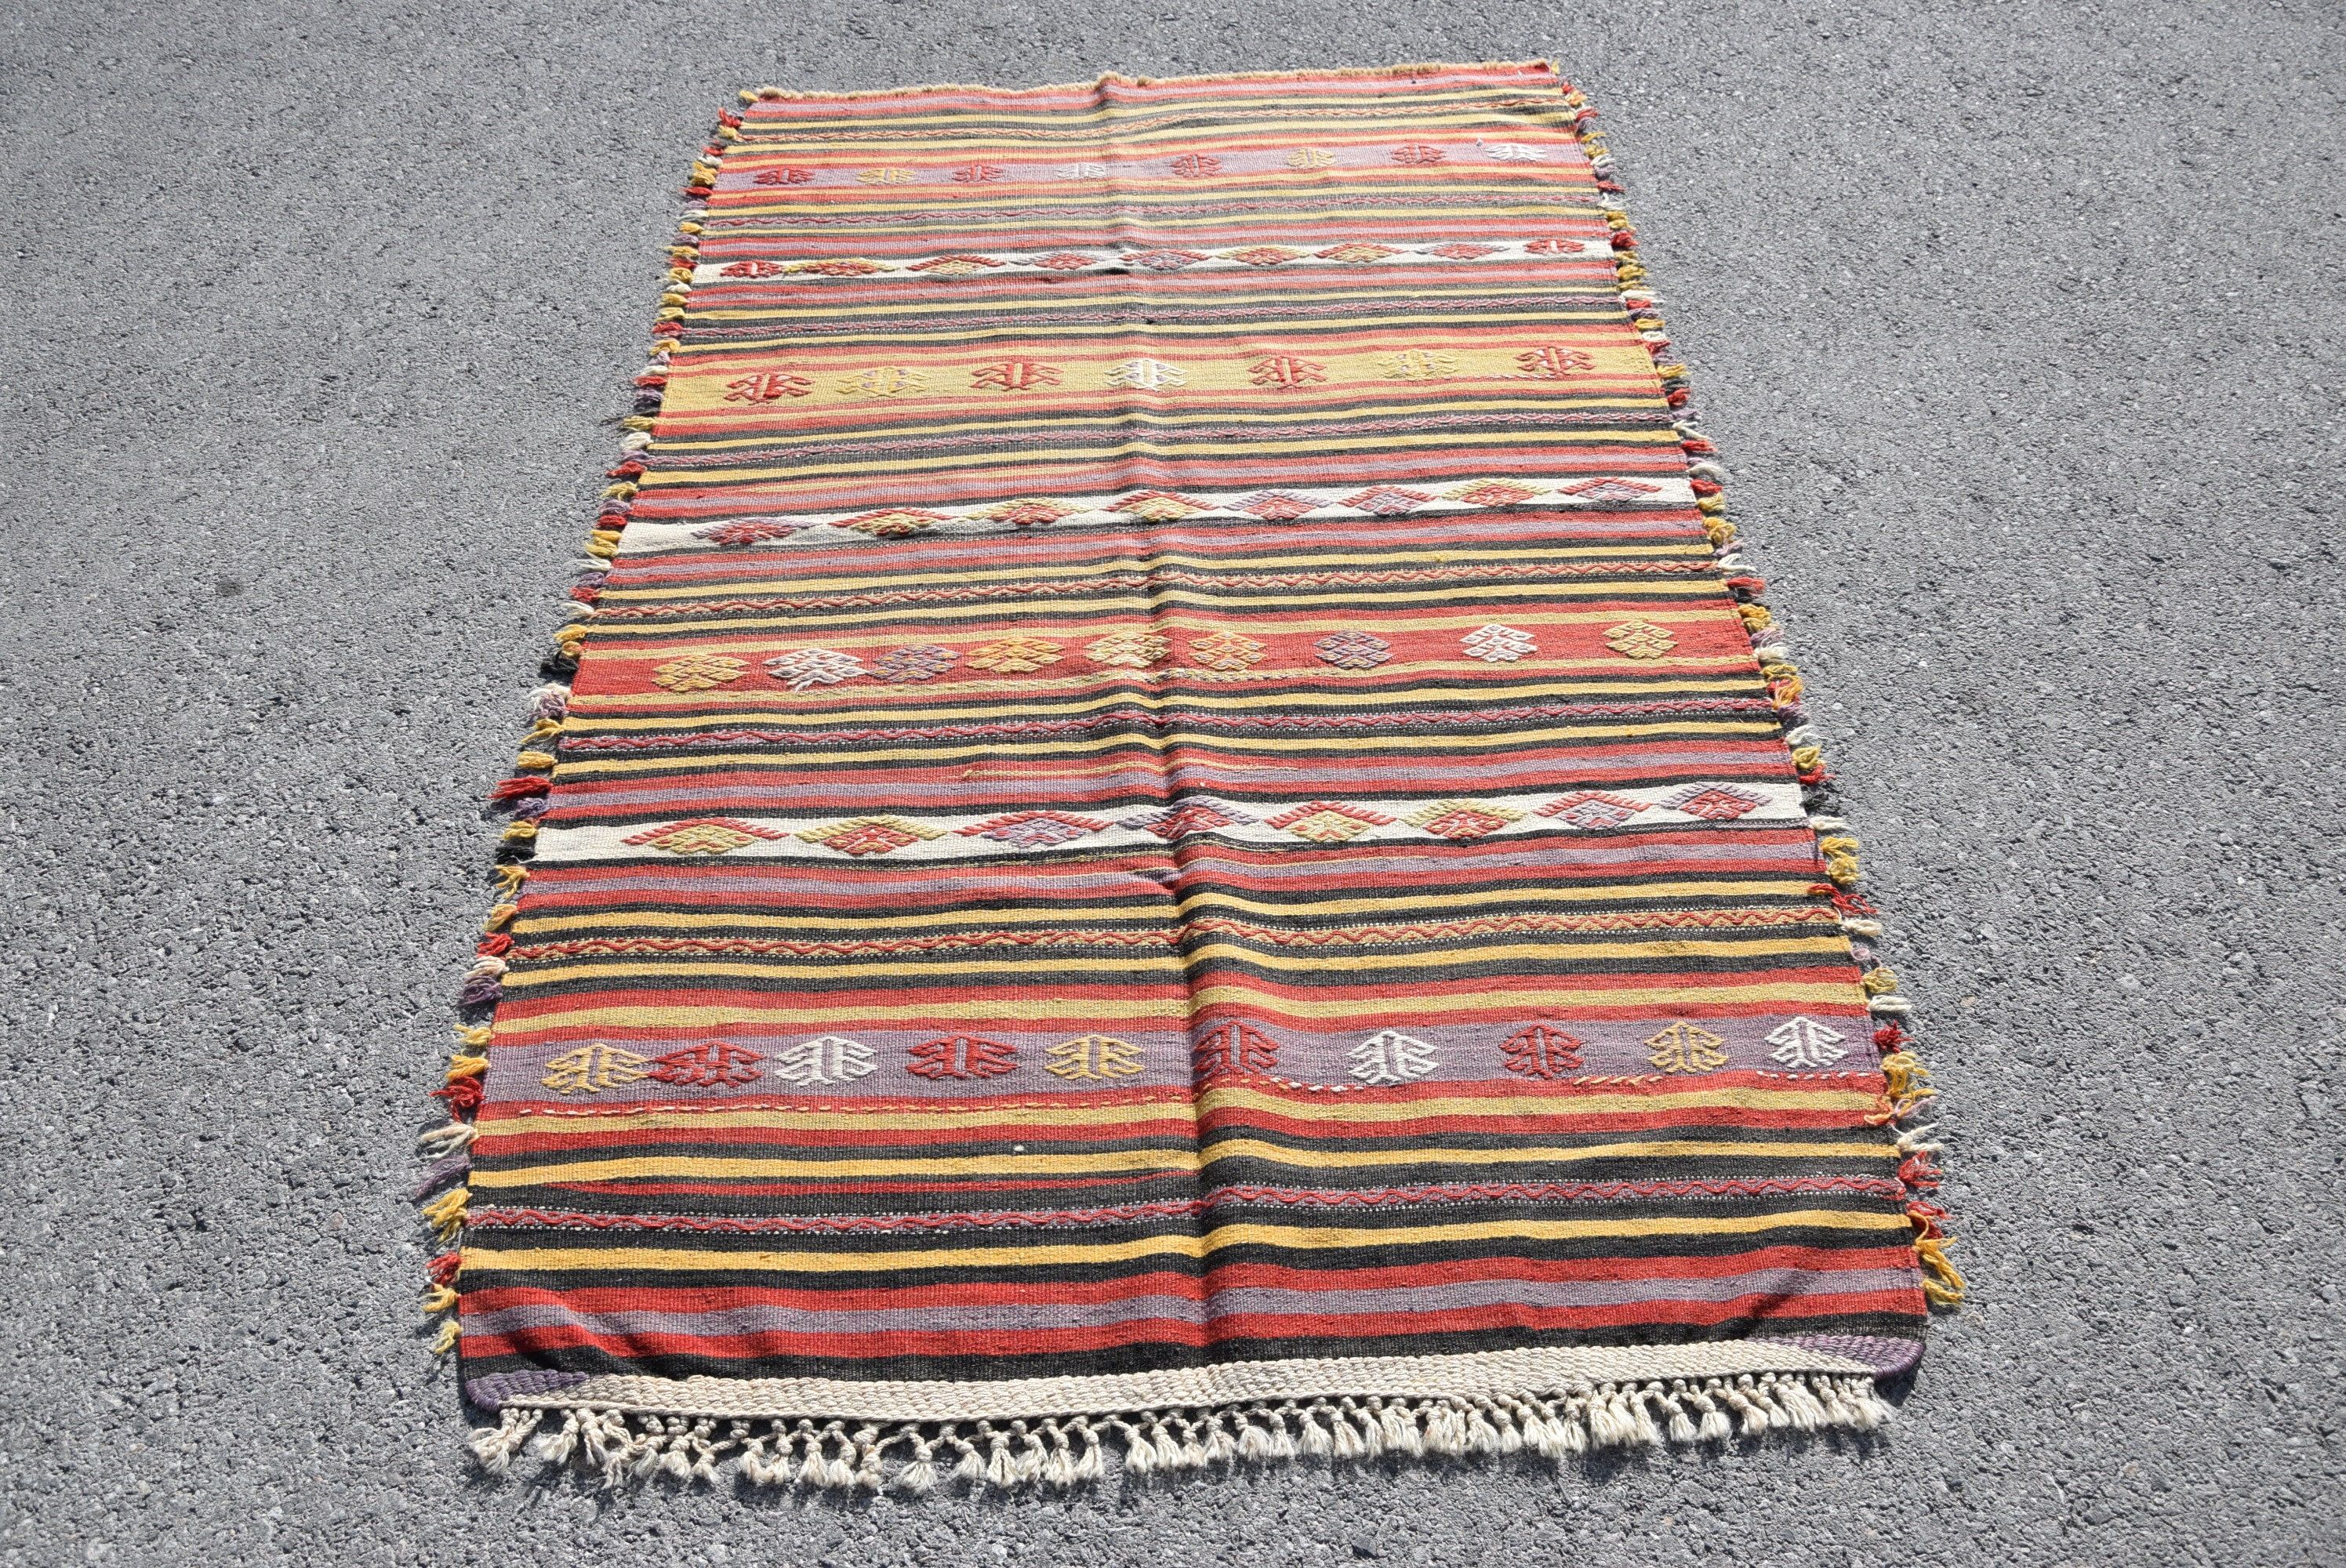 Turkish Rug, Red Moroccan Rugs, Wool Rugs, Vintage Rugs, Kilim, Antique Rug, Dining Room Rug, Pastel Rug, 3.9x6.6 ft Area Rug, Indoor Rug